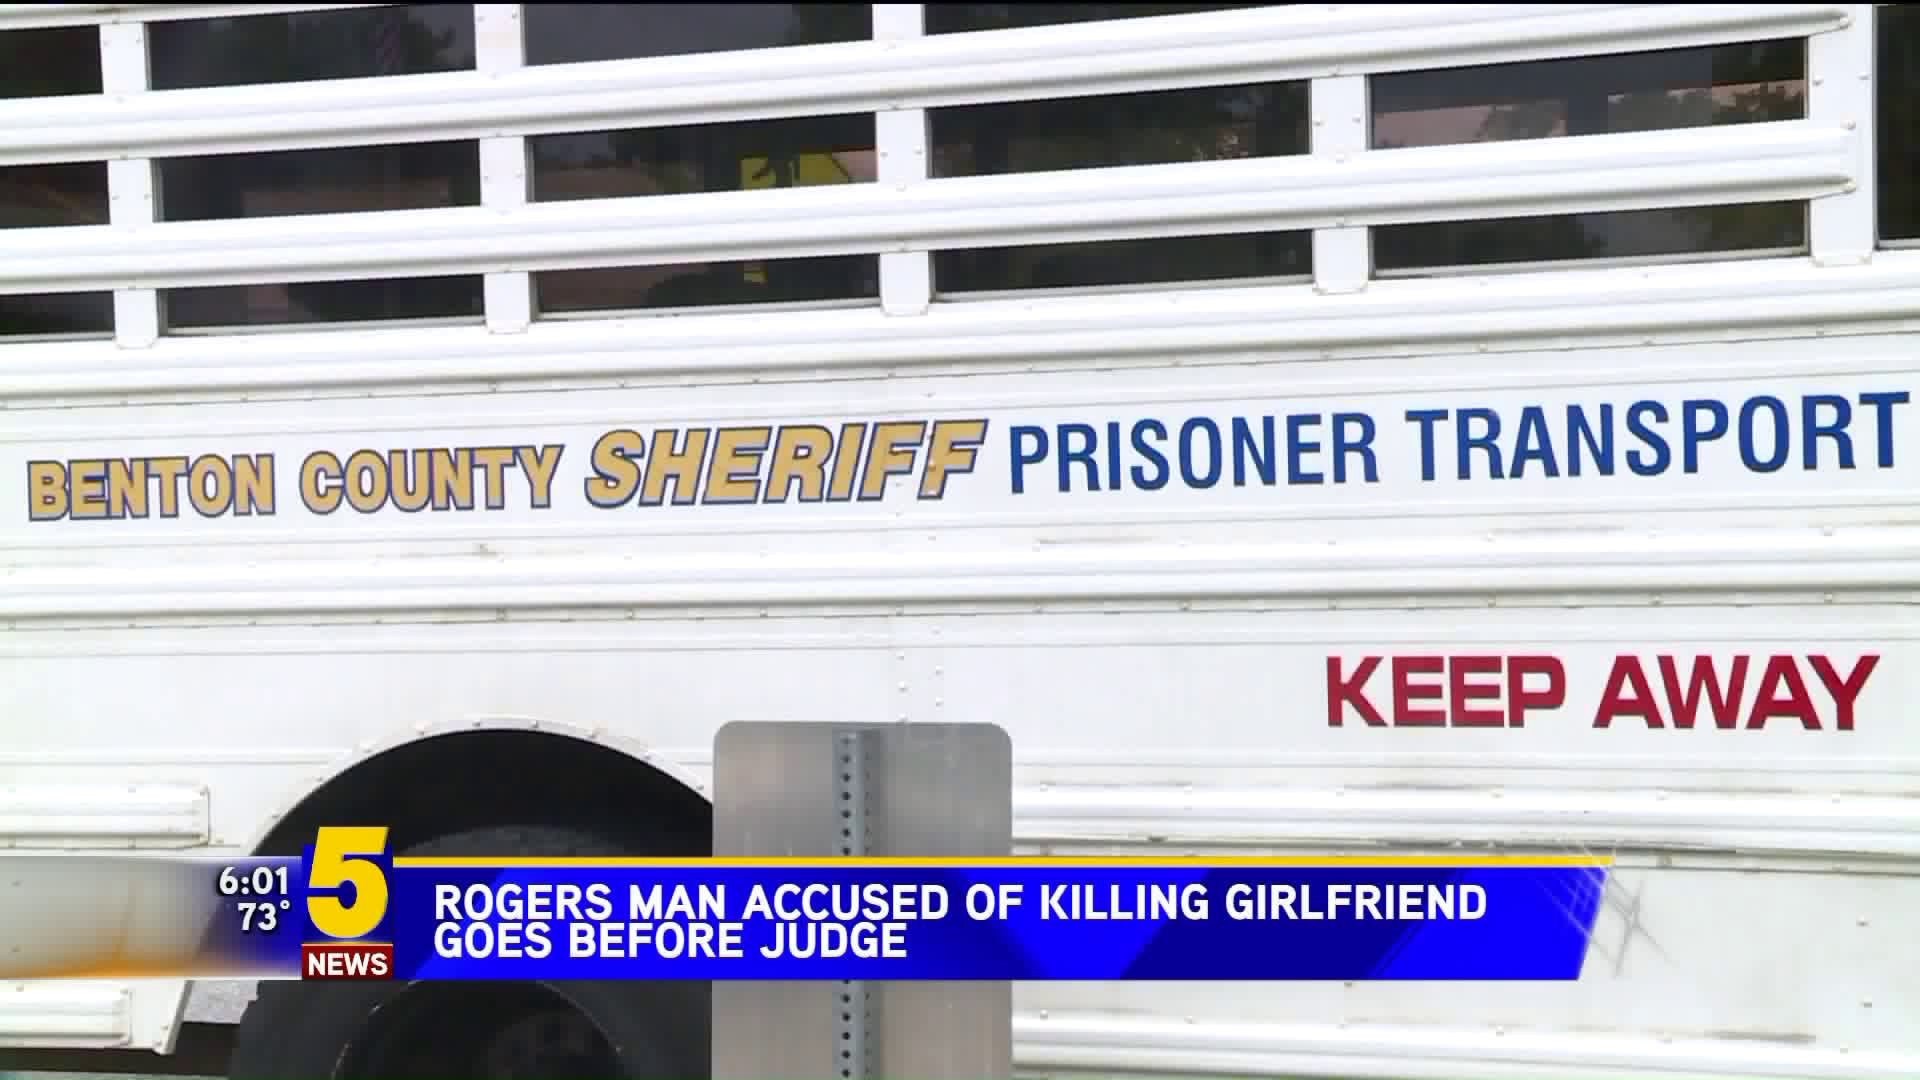 Rogers Man Accused Of Killing Girlfriend Goes Before Judge